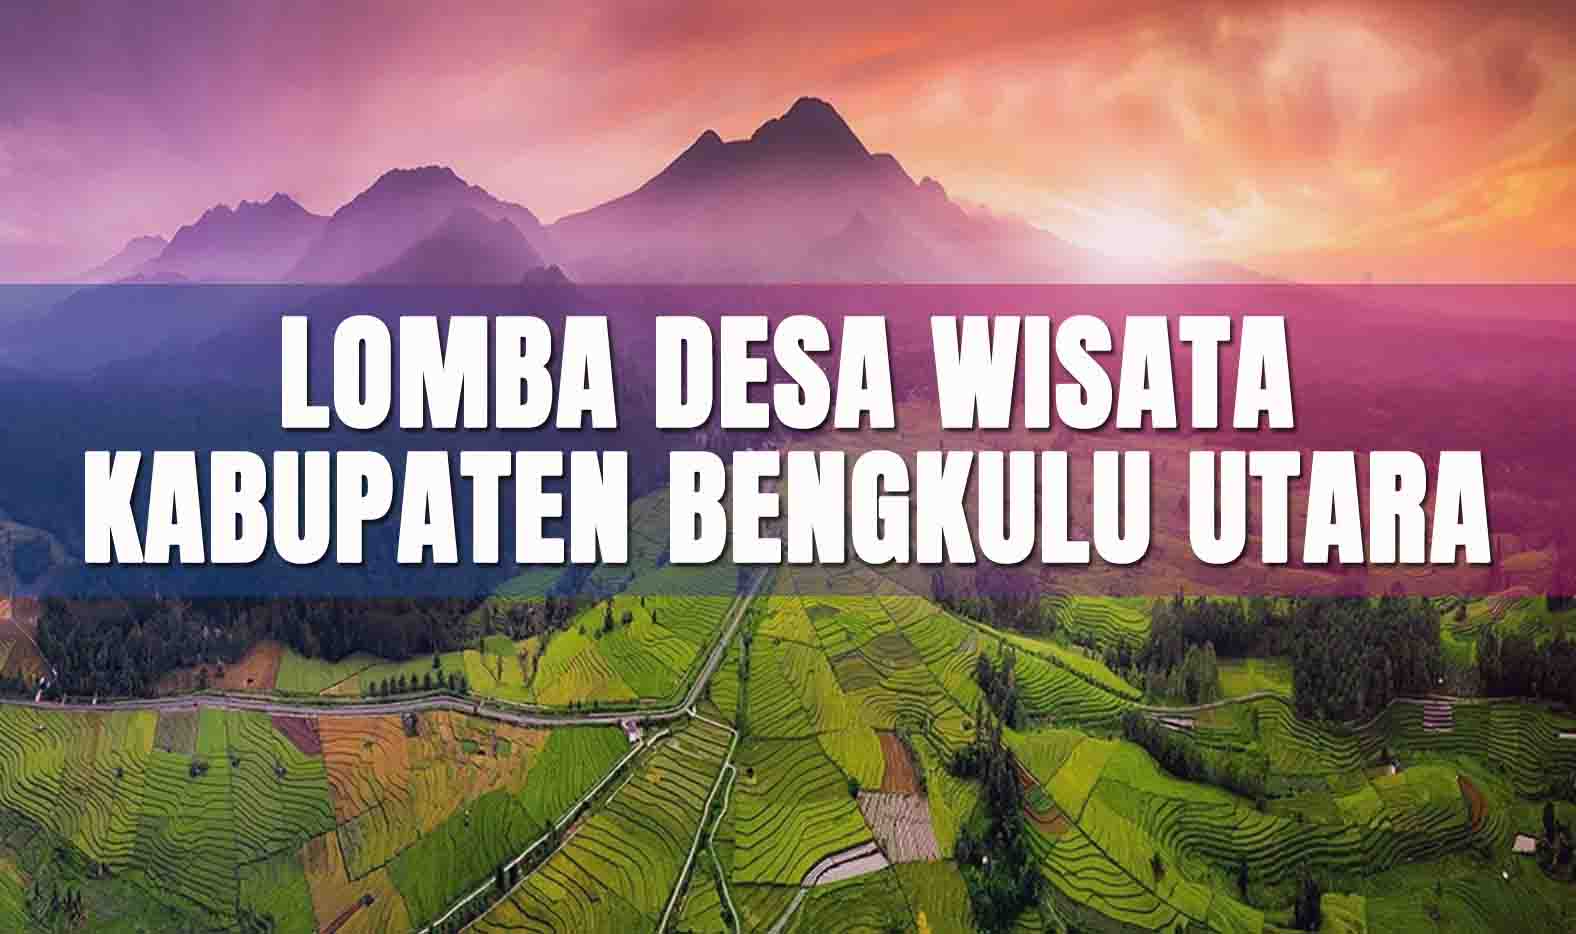 Dinas Pariwisata Gelar Lomba Desa Wisata Tingkat Kabupaten Bengkulu Utara